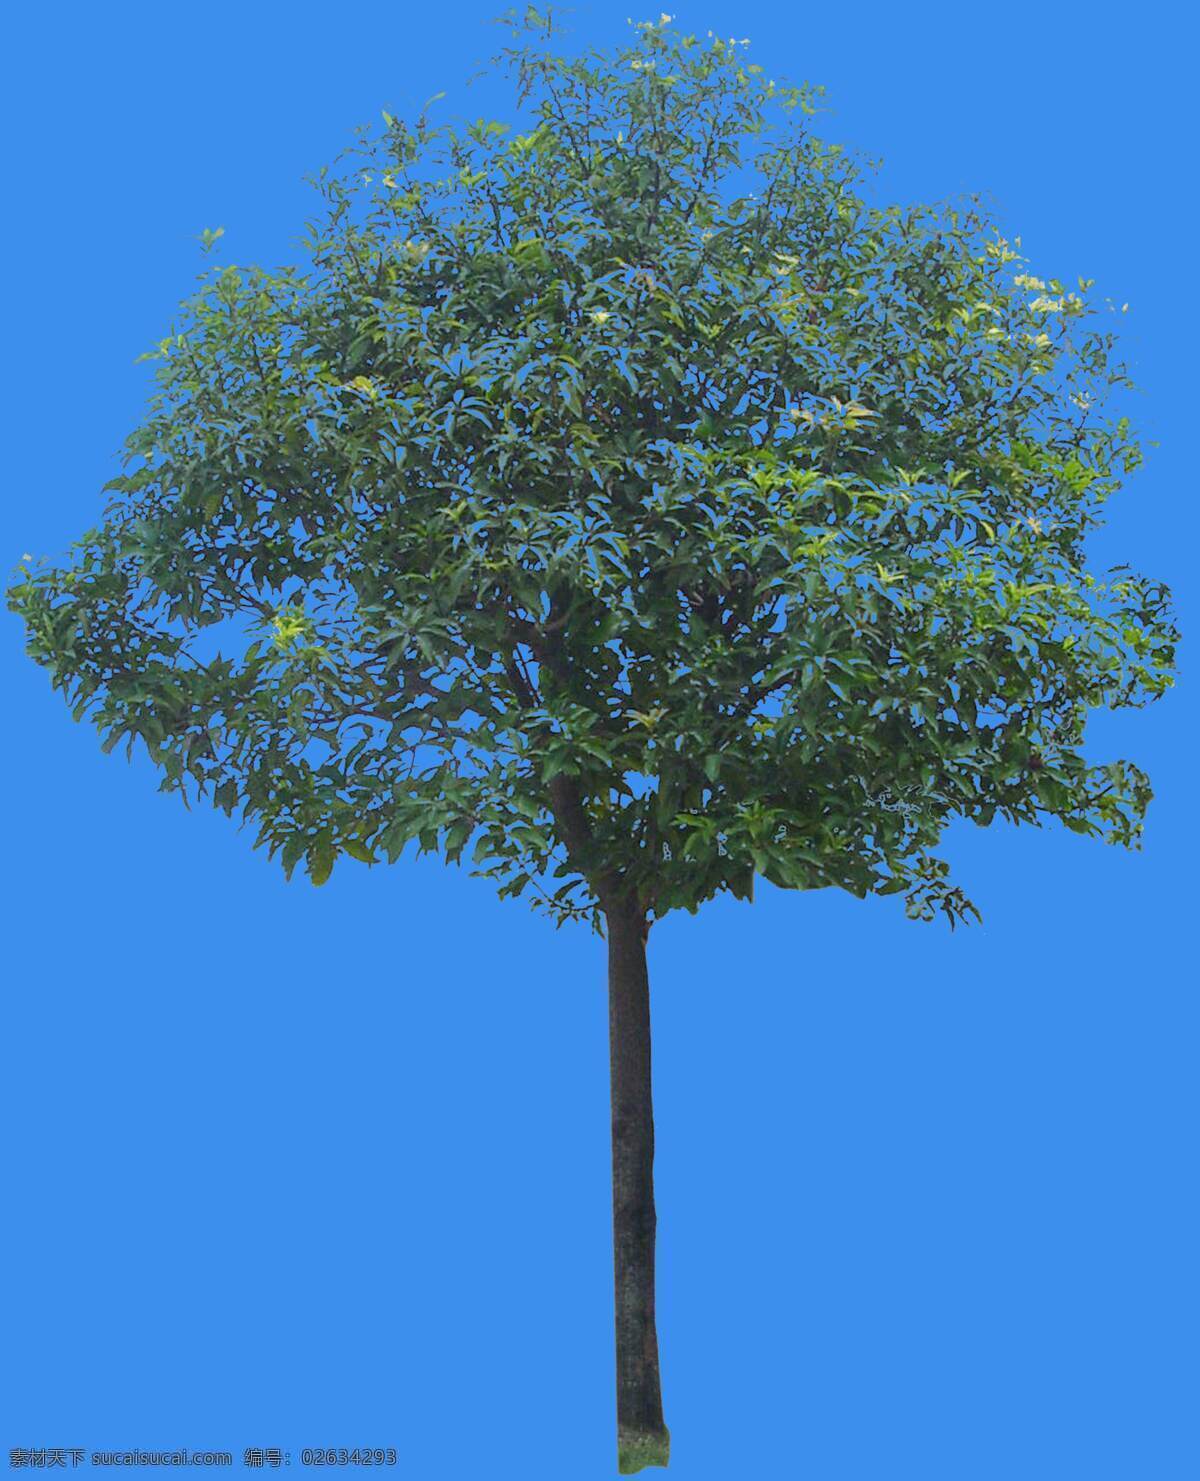 芒果 果树 灌木 类 植物 园林植物 灌木类 配景素材 园林 建筑装饰 设计素材 3d模型素材 室内场景模型